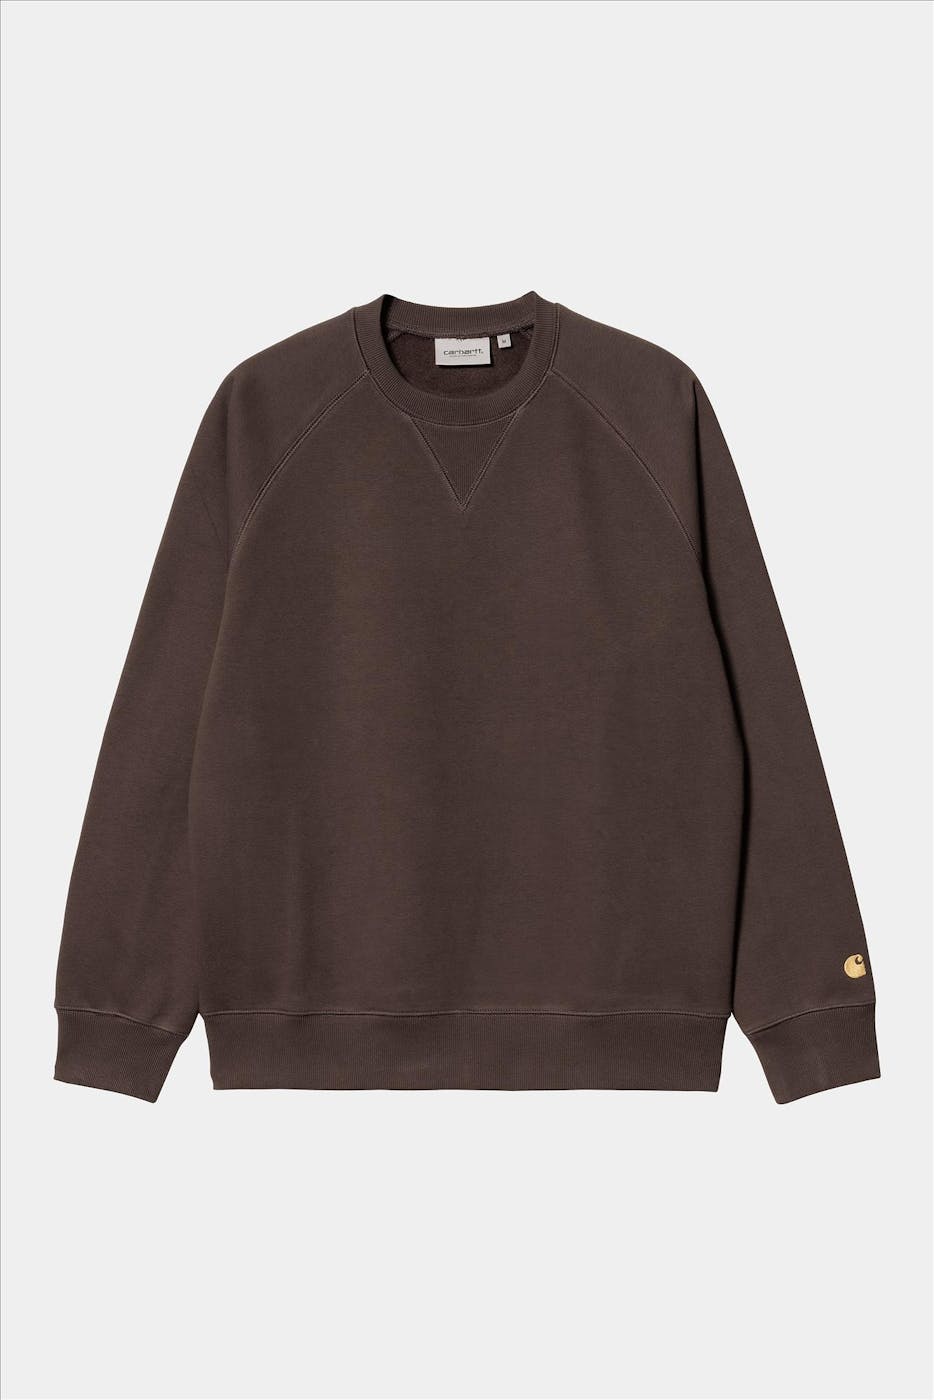 Carhartt WIP - Bruine Chase sweater